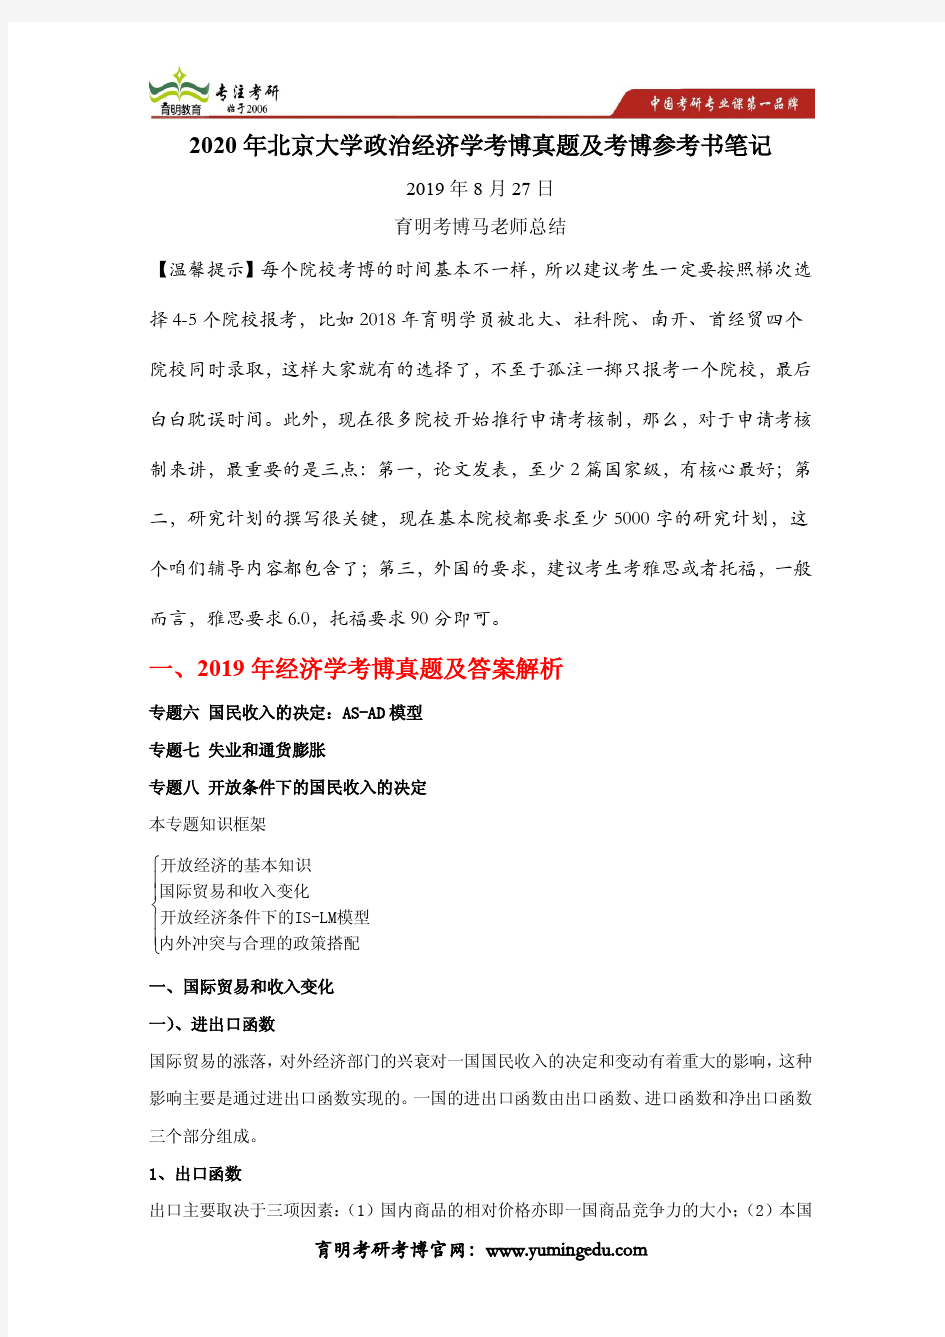 2020年北京大学马院政治经济学考博真题及考博参考书笔记